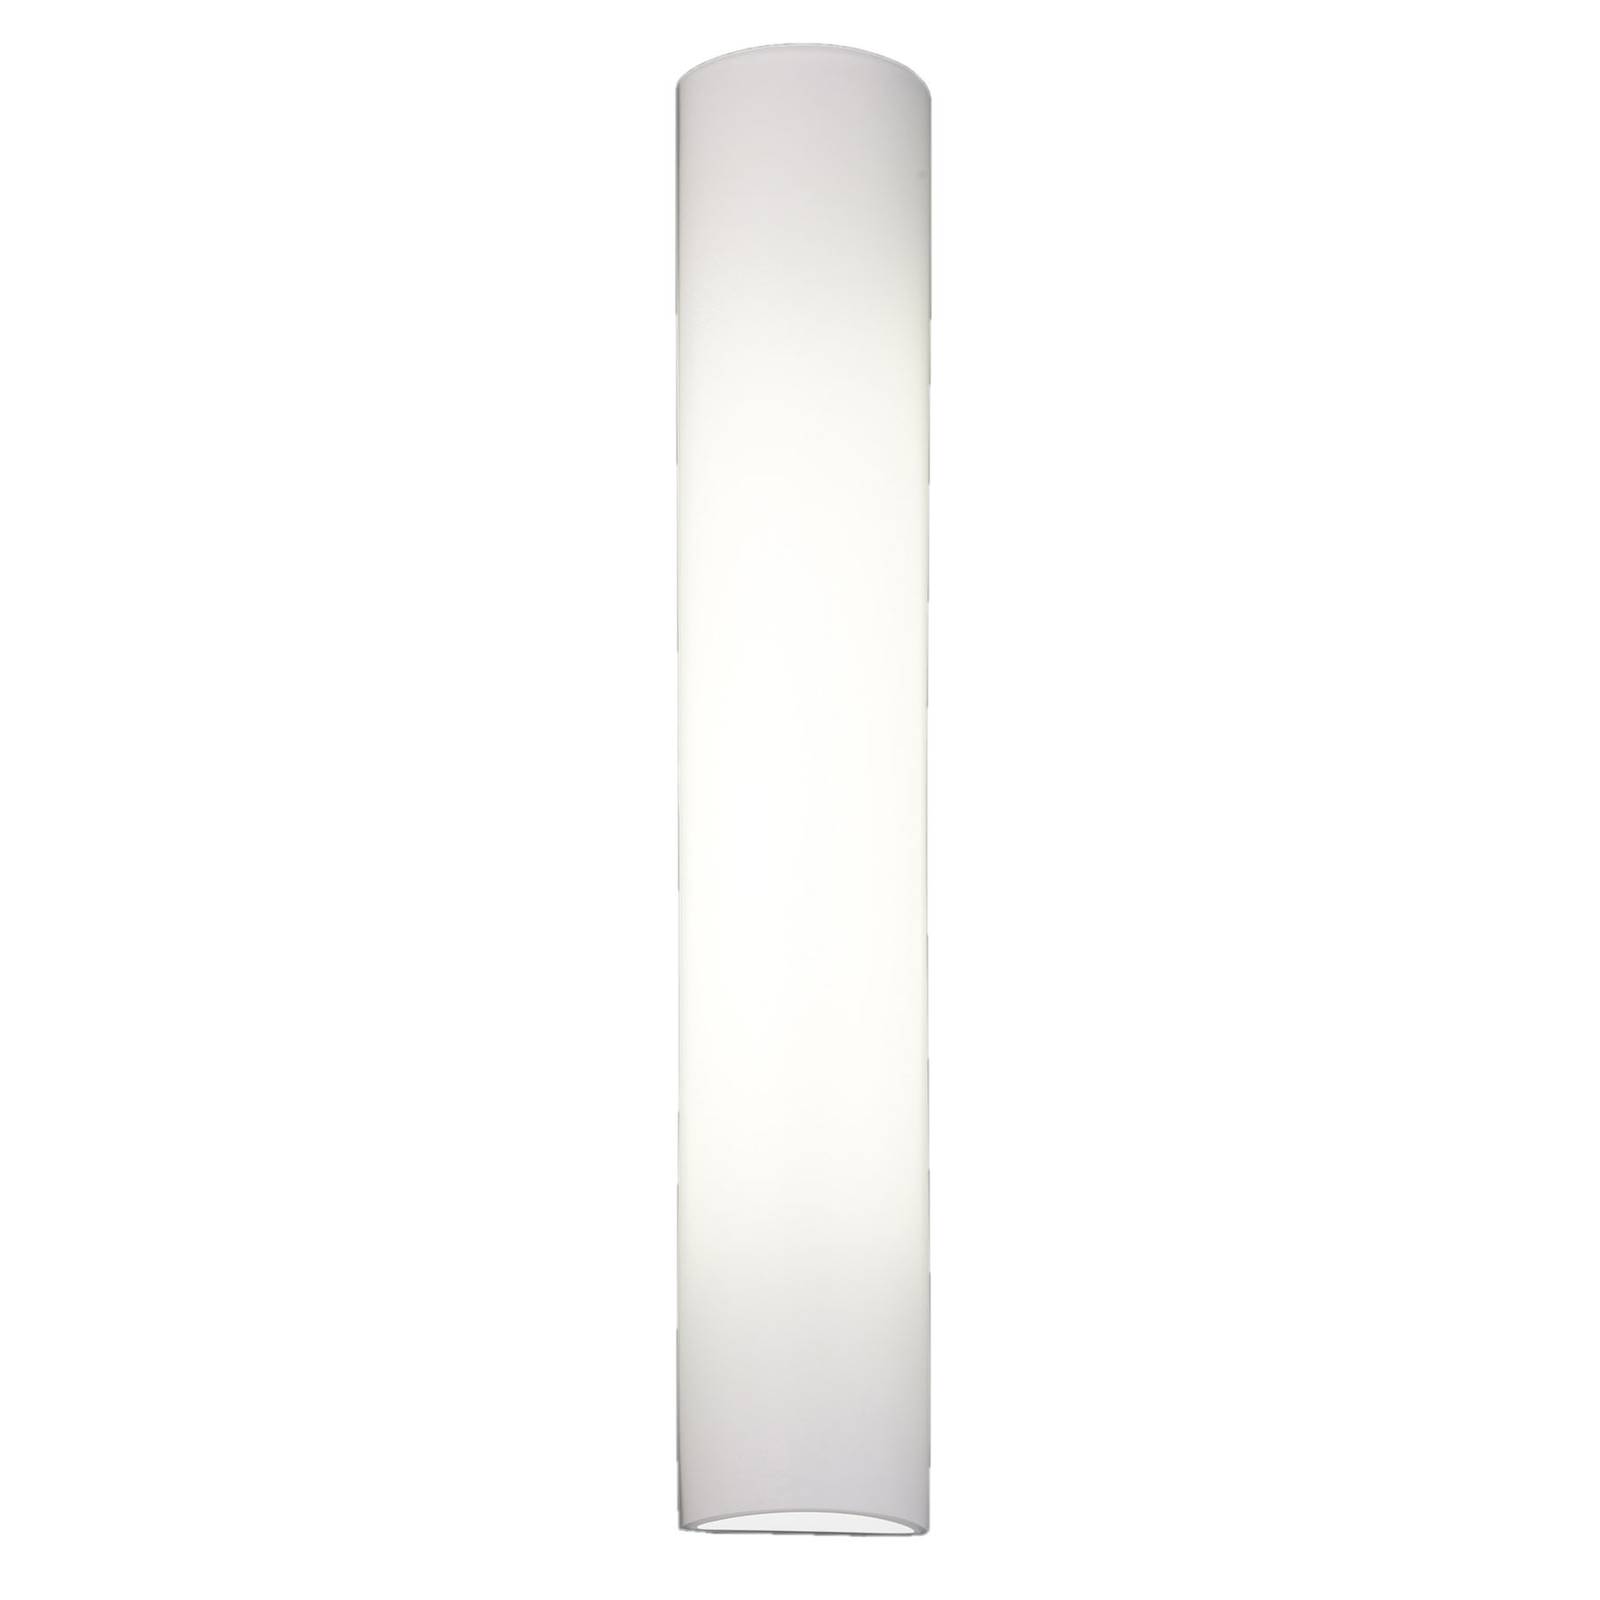 BANKAMP Cromo LED-væglampe i glas højde 54cm